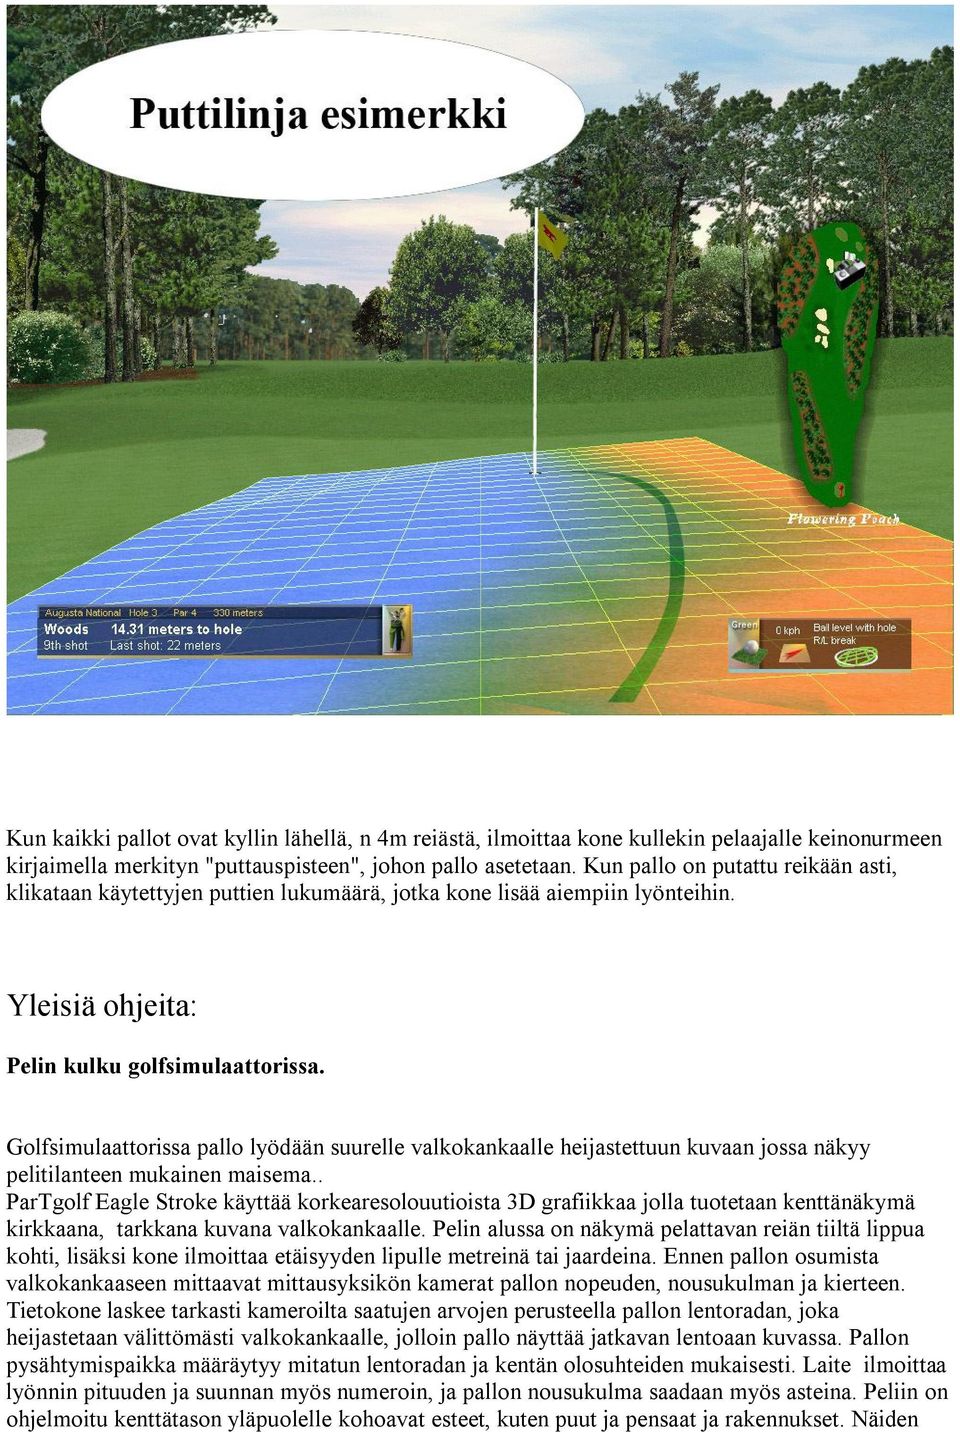 Golfsimulaattorissa pallo lyödään suurelle valkokankaalle heijastettuun kuvaan jossa näkyy pelitilanteen mukainen maisema.